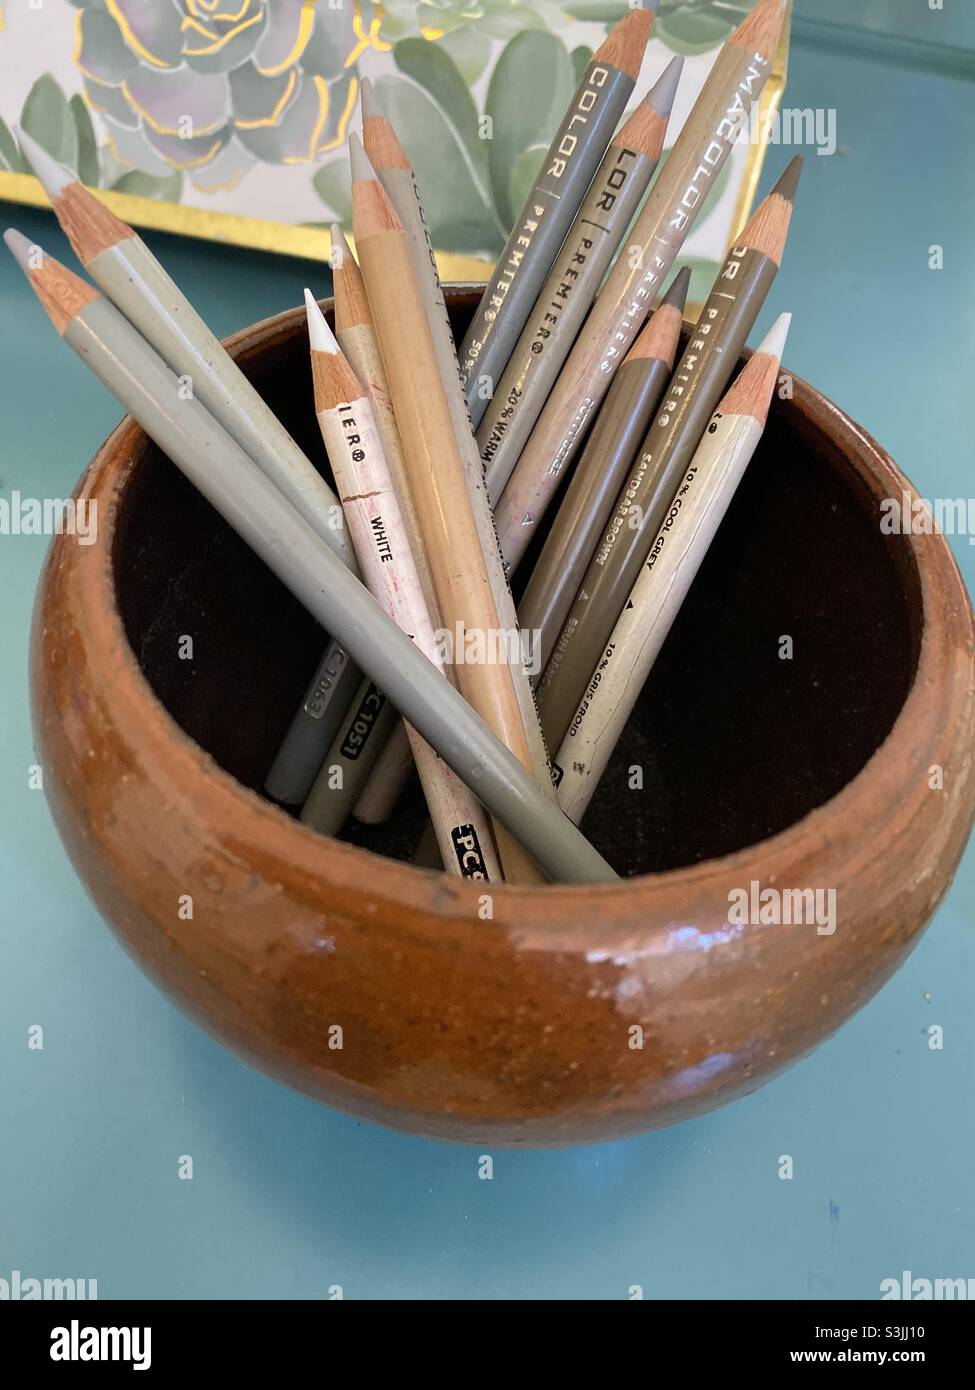 Tavolozza di colori neutri di matite colorate in una ciotola di ceramica marrone. Foto Stock